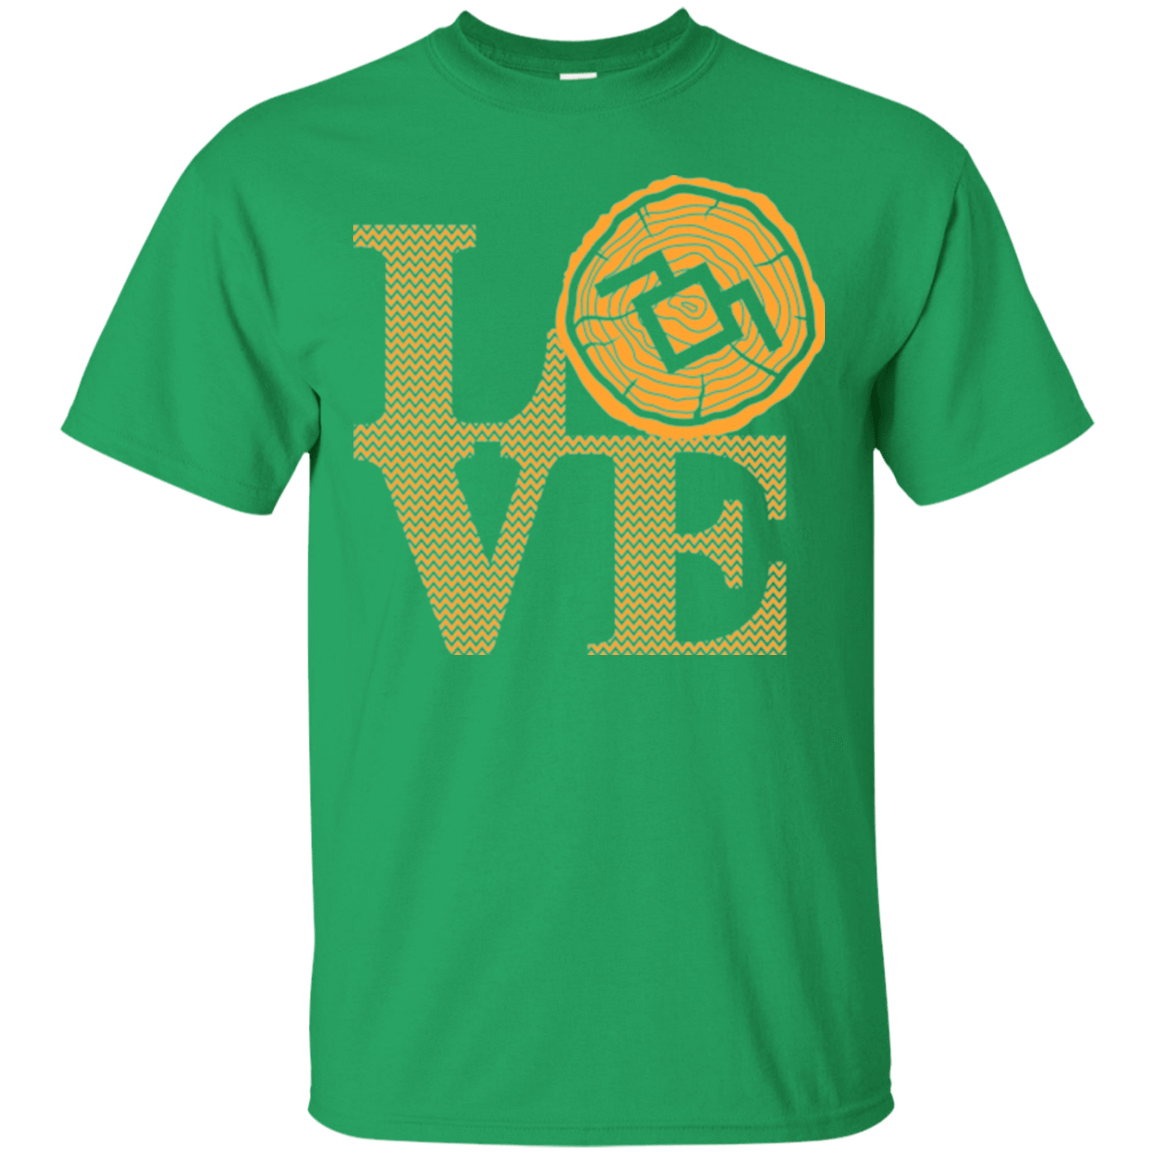 T-Shirts Irish Green / Small LOVE TWIN PEAKS T-Shirt